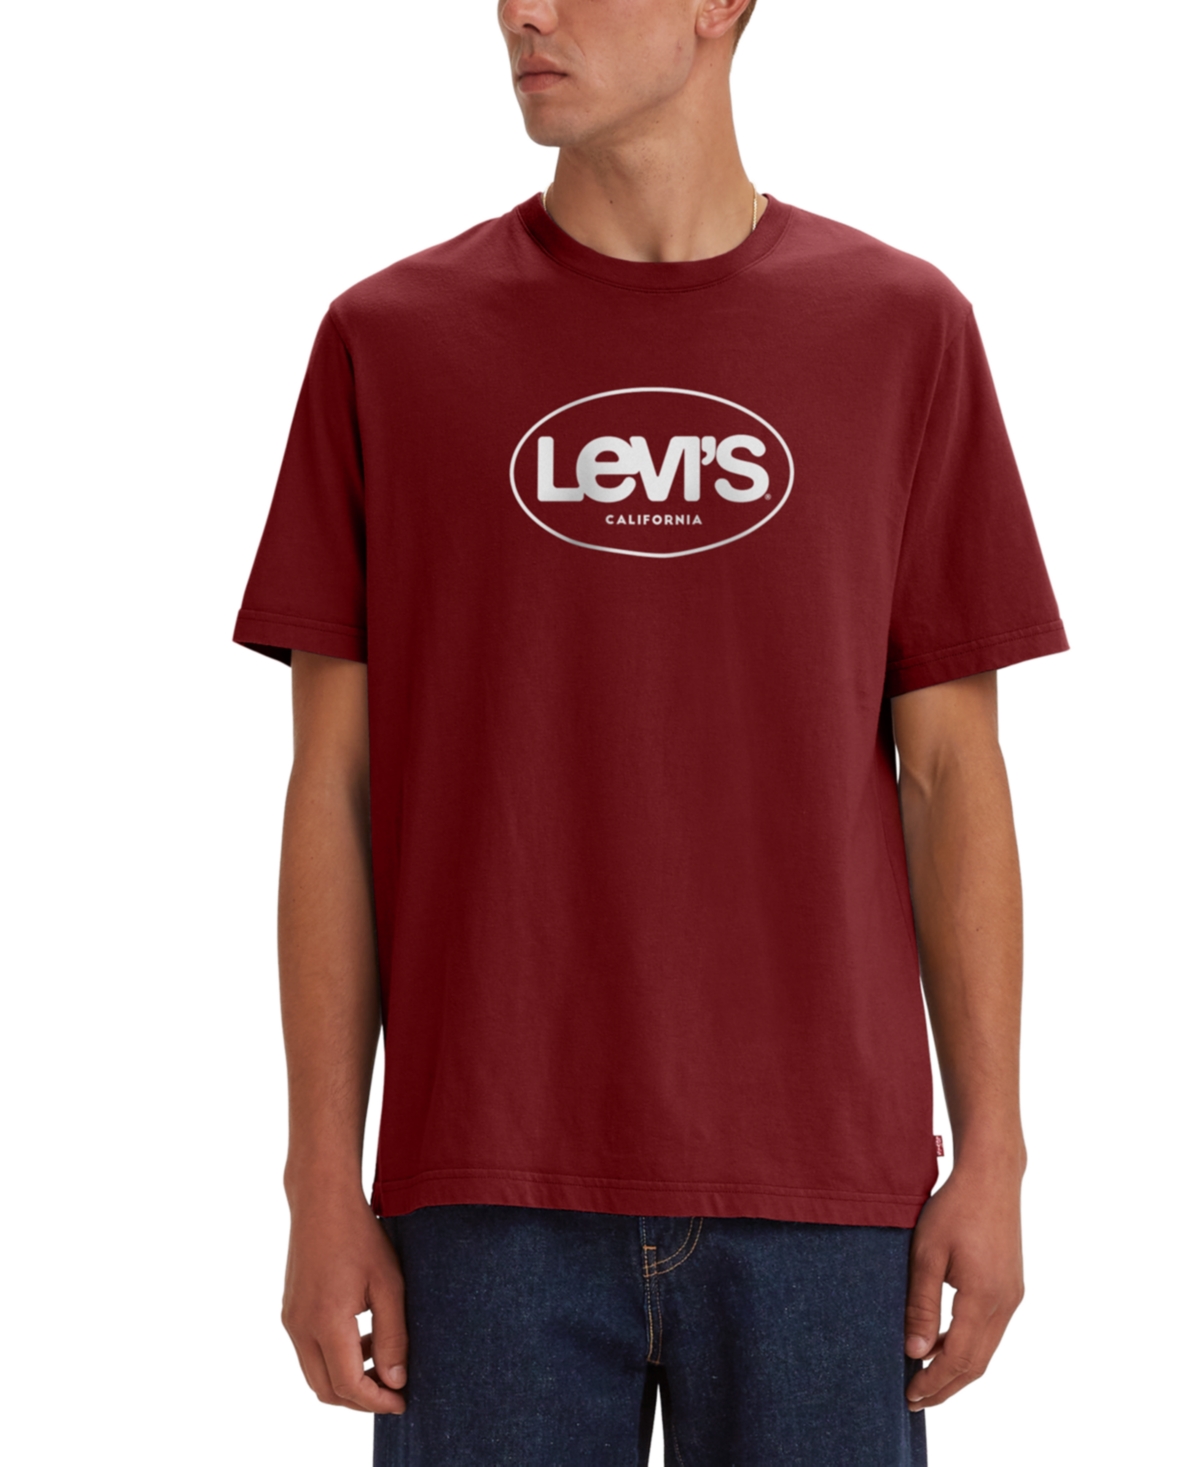 Levi's Men's Surf Logo Graphic T-Shirt